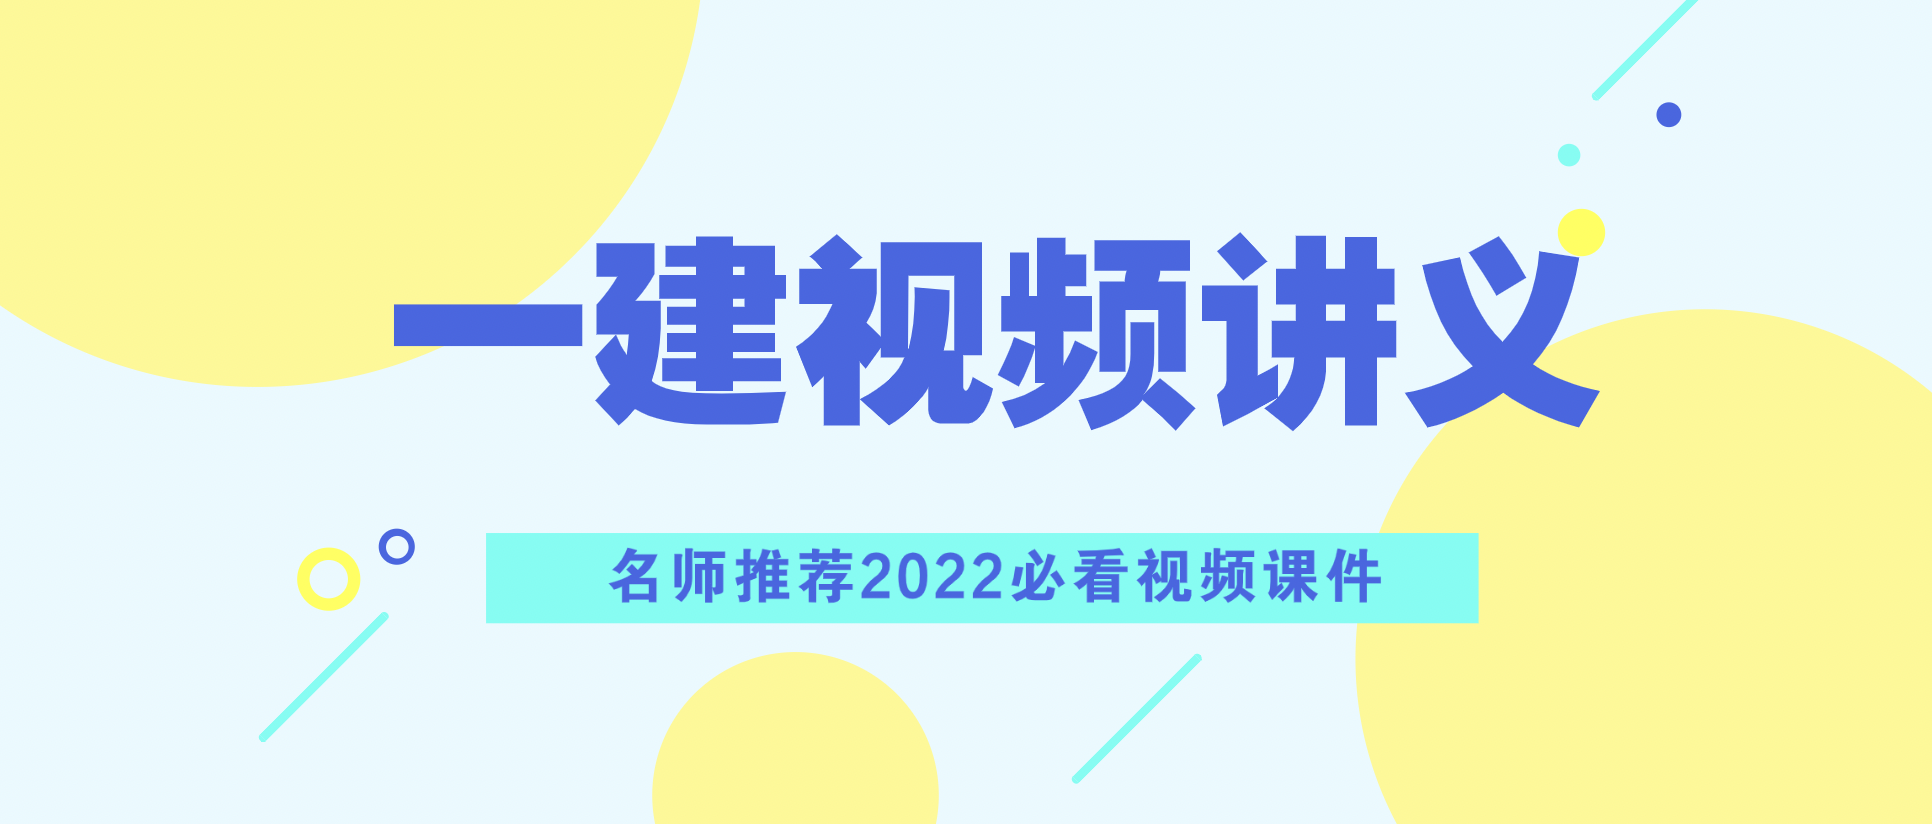 2022年张凯一建建筑视频讲义网盘下载【系统精讲班完整版】